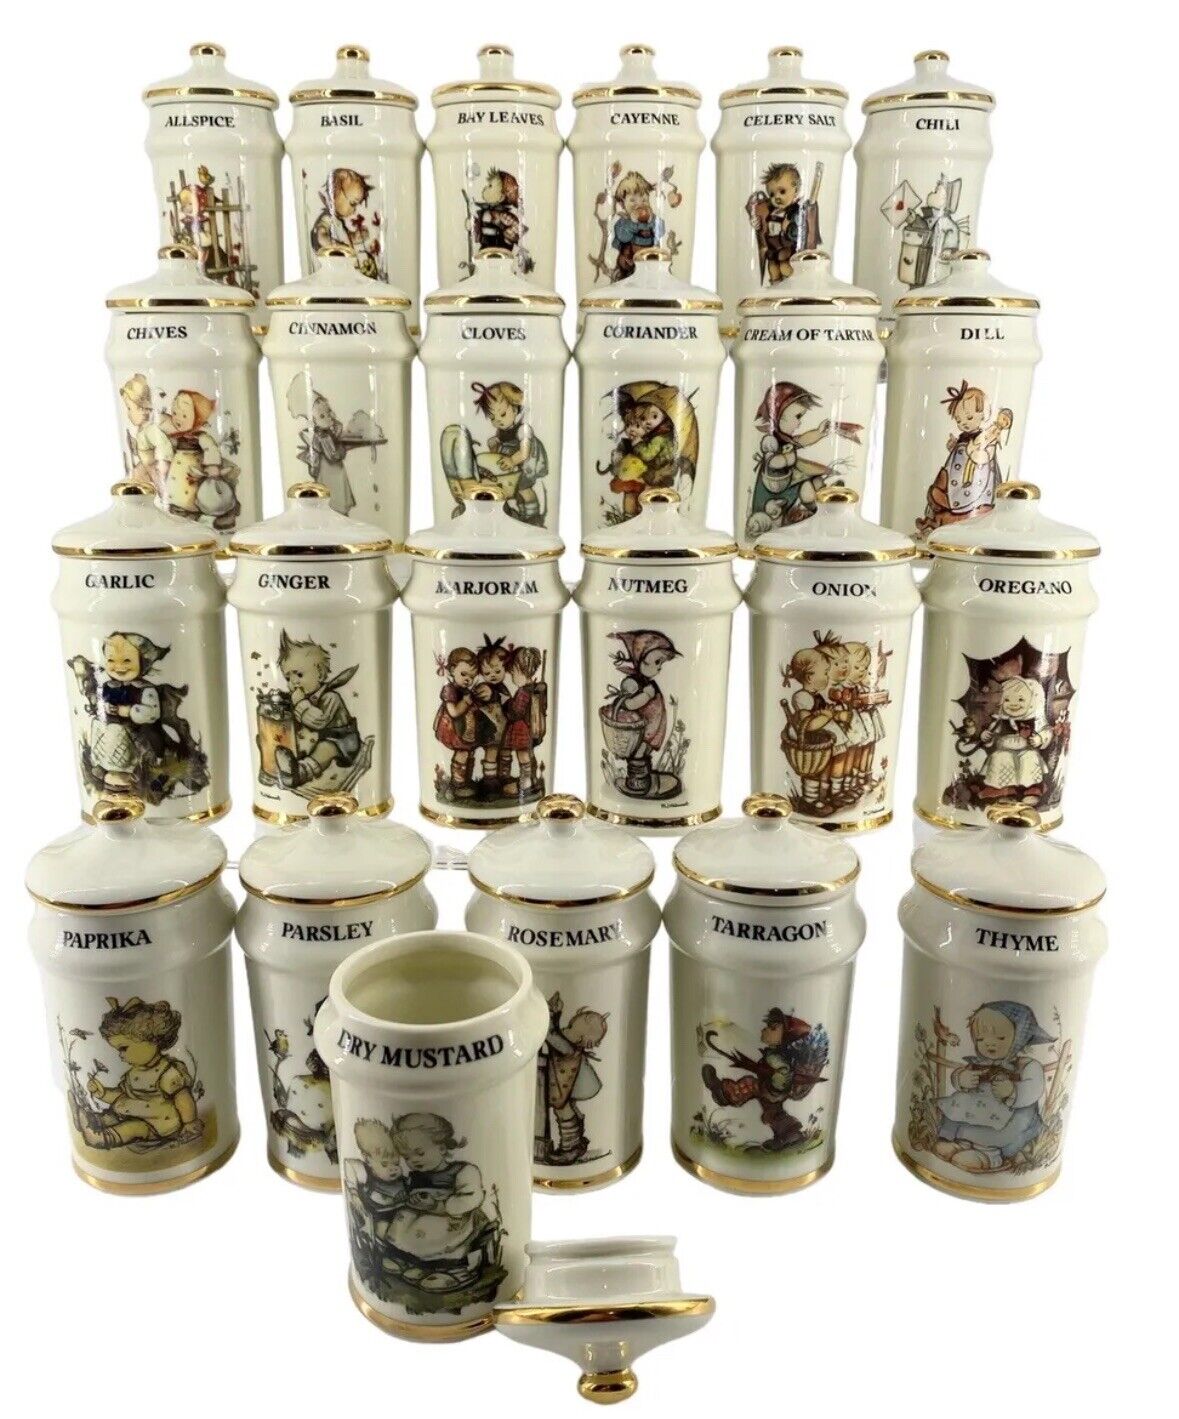 VTG MJ Hummel Porcelain Spice Jars 1987 Danbury Mint 24k Trim Japan Set Of 24